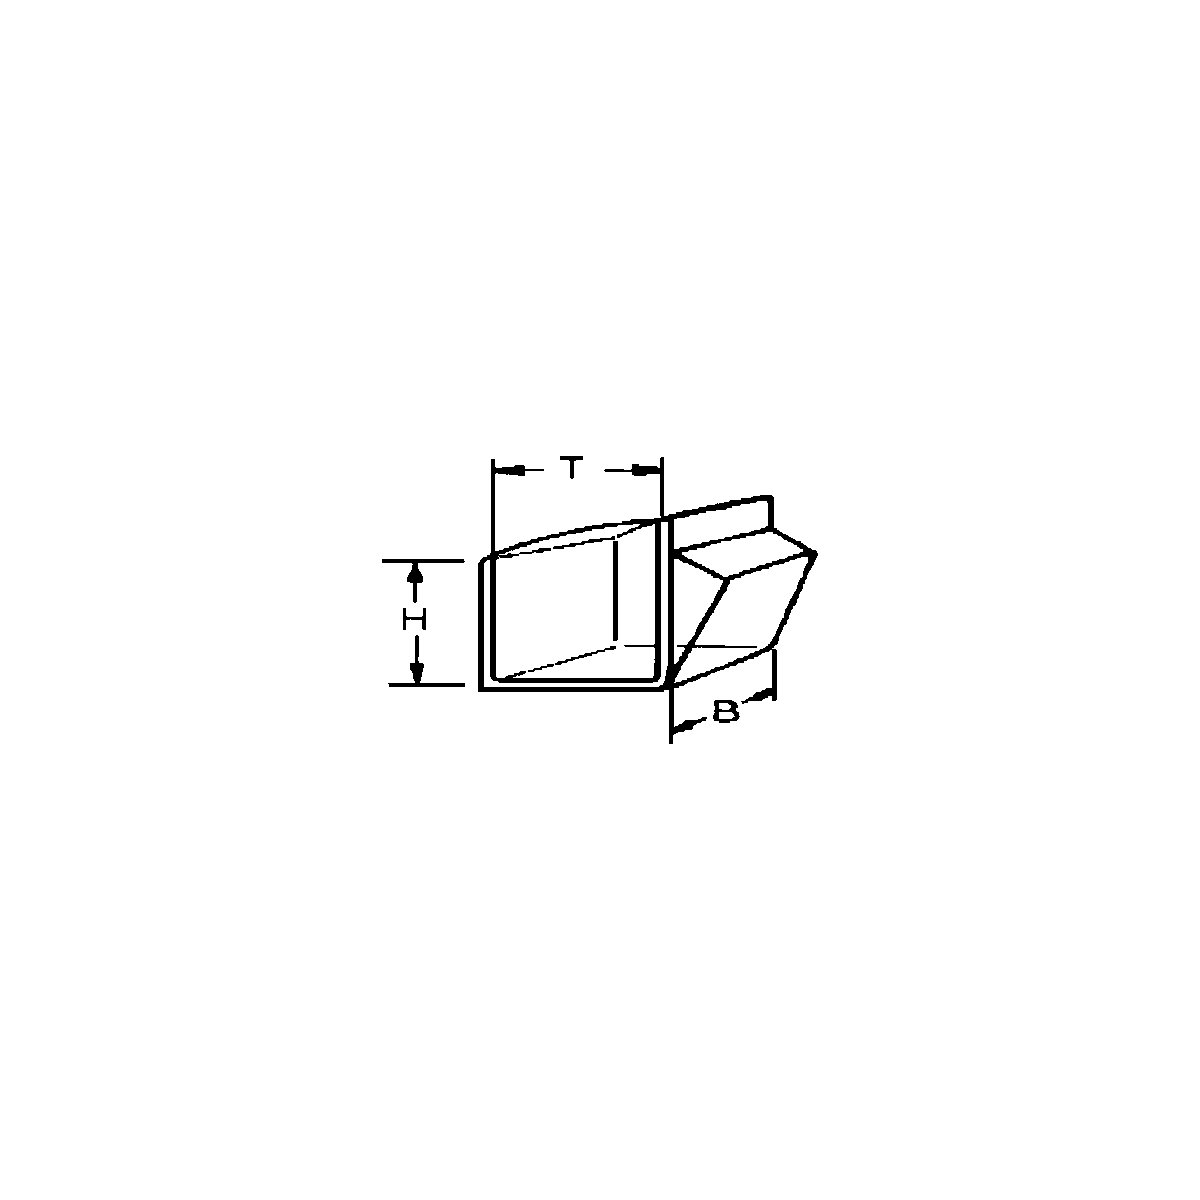 Sistem de depozitare cu cutie cu clapetă (Imagine produs 14)-13